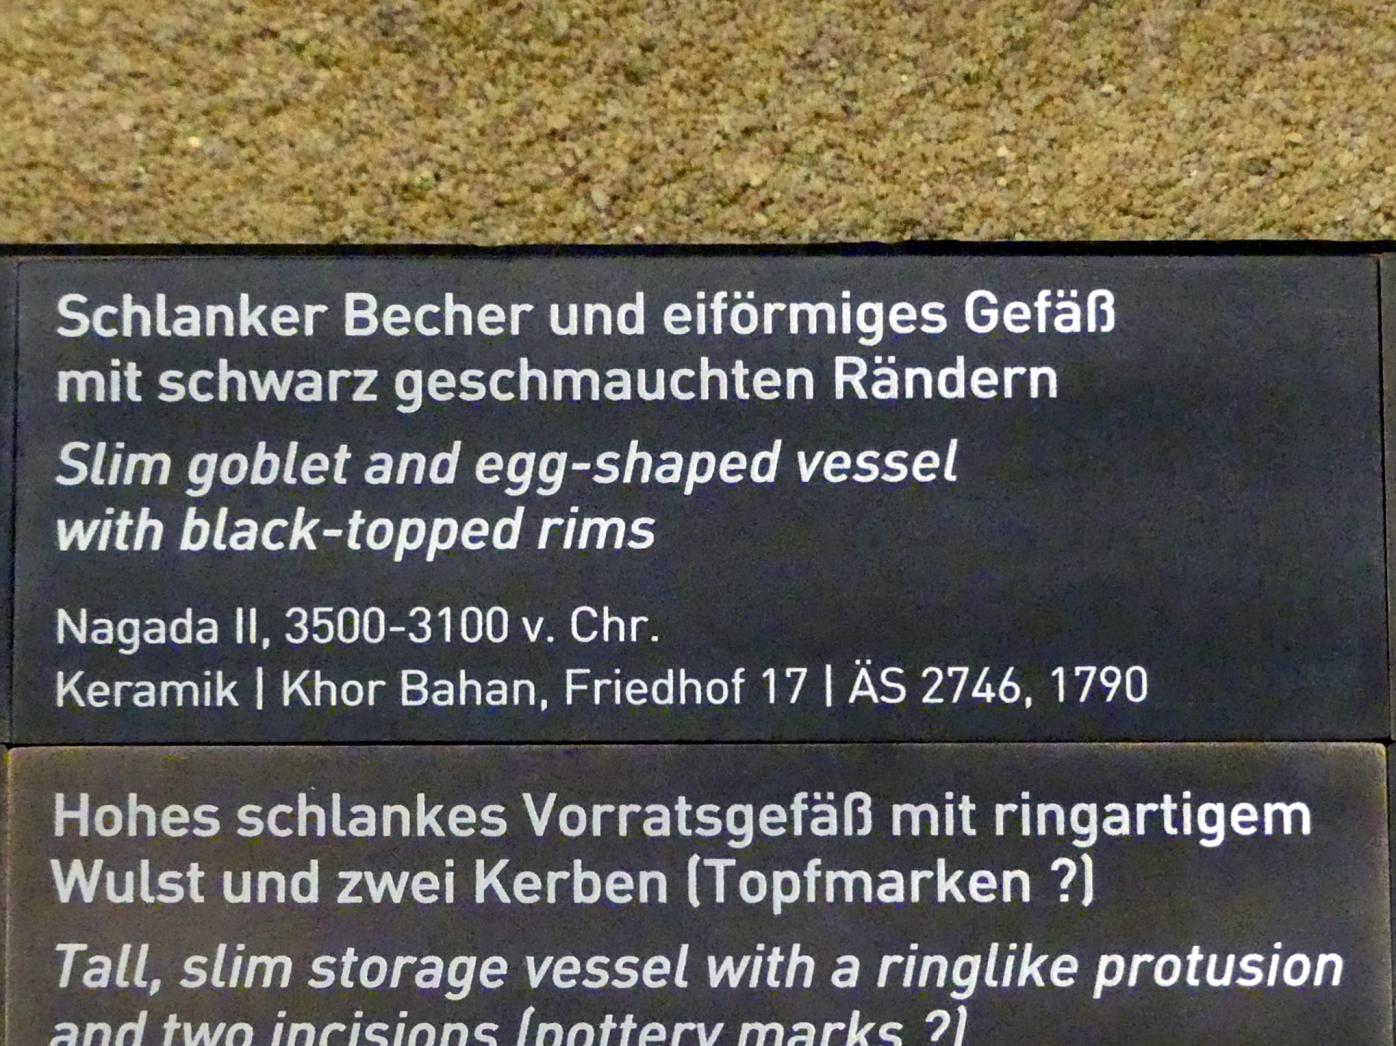 Schlanker Becher mit schwarz geschmauchtem Rand, Naqada II, 3700 - 3100 v. Chr., 3500 - 3100 v. Chr., Bild 2/2